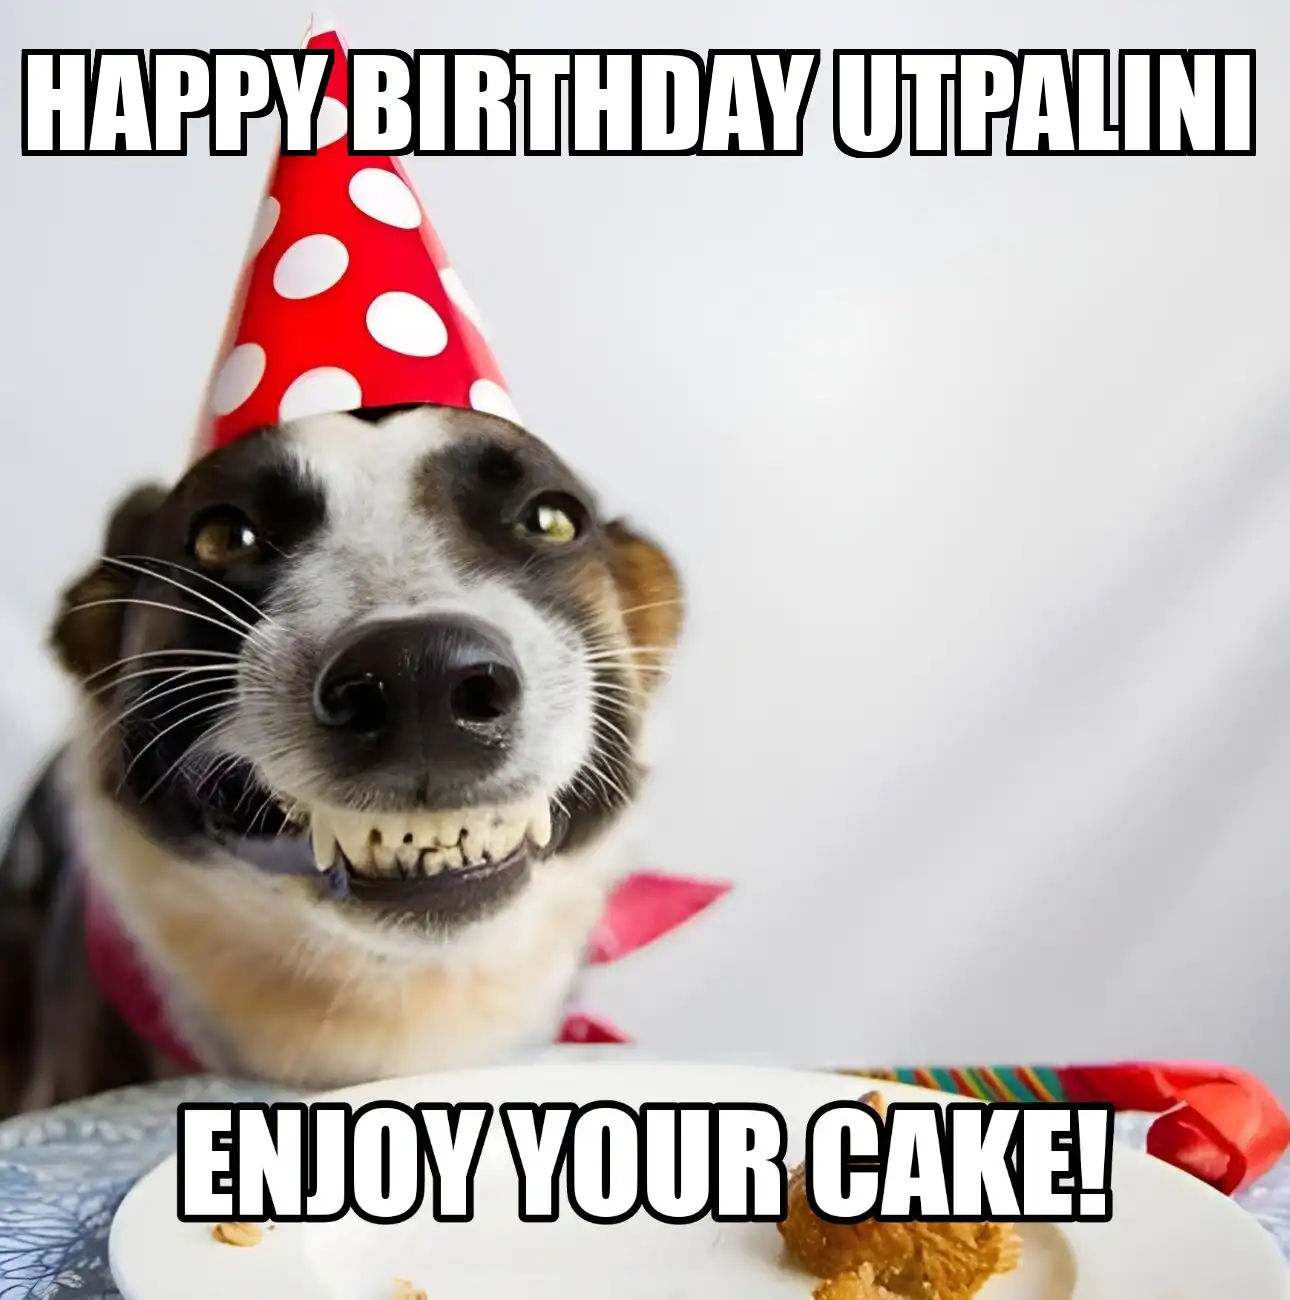 Happy Birthday Utpalini Enjoy Your Cake Dog Meme